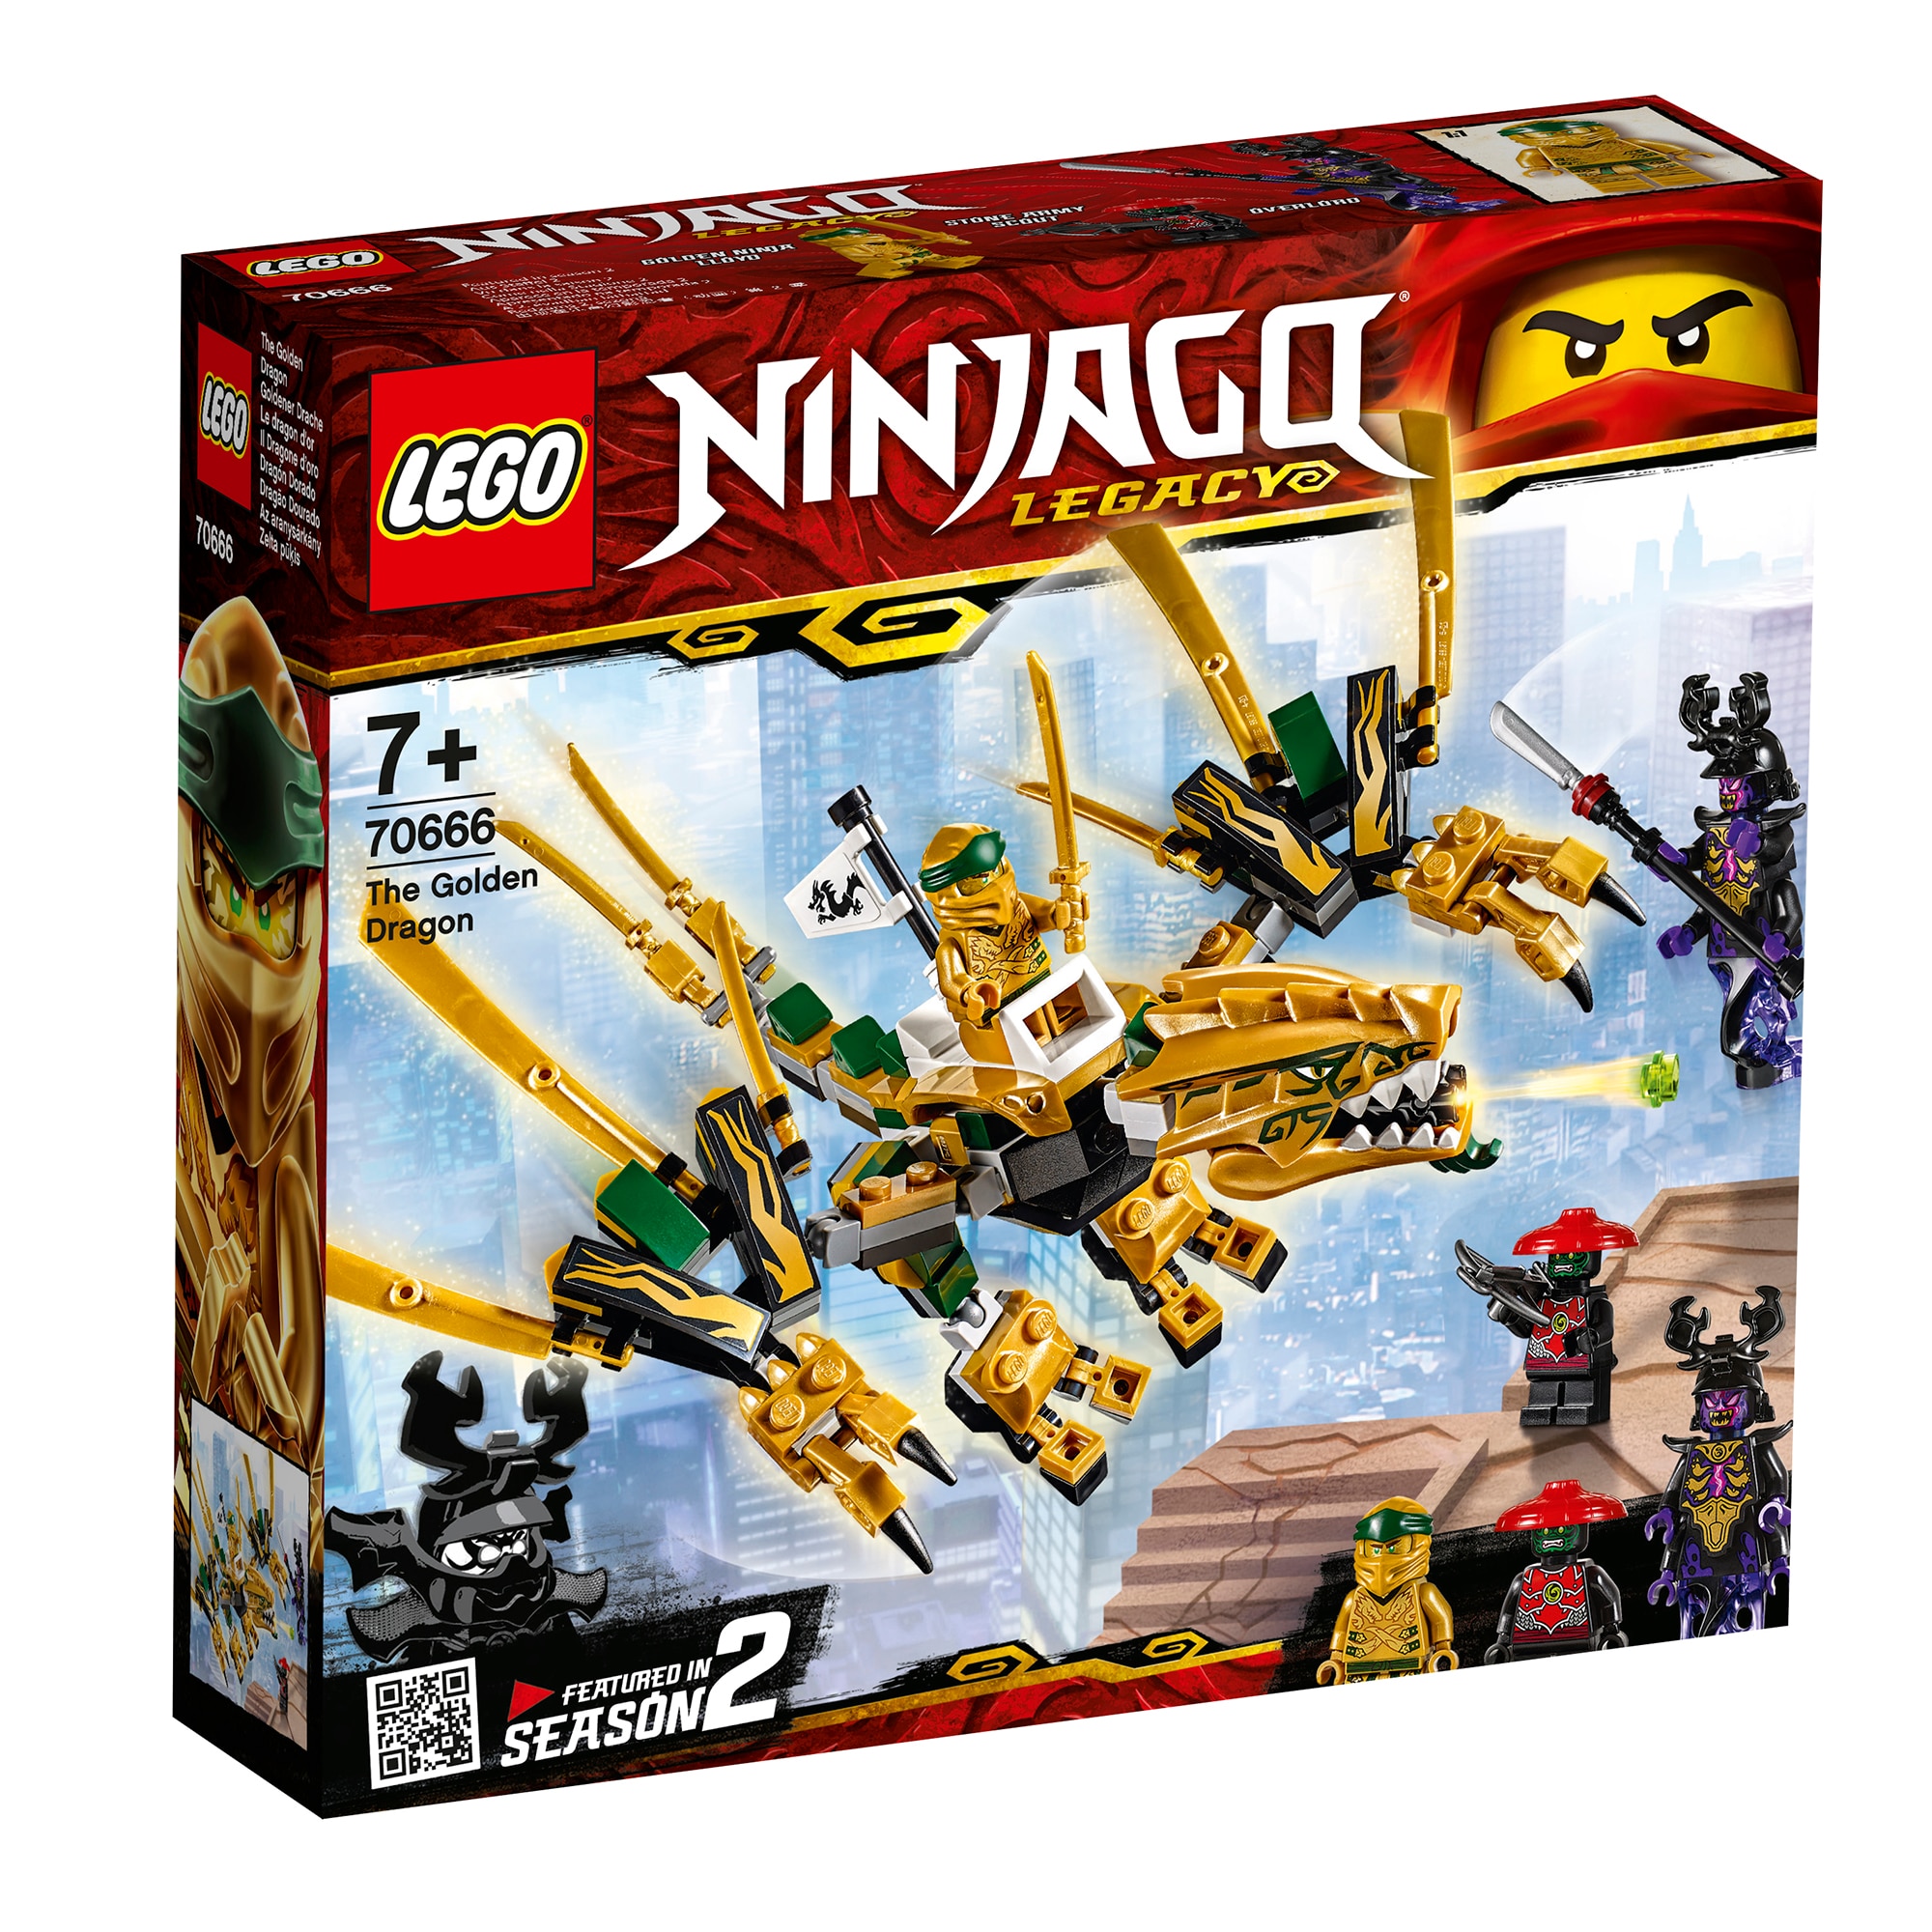 triumphant whiskey evening LEGO NINJAGO - Dragonul de aur 70666, 171 piese - eMAG.ro